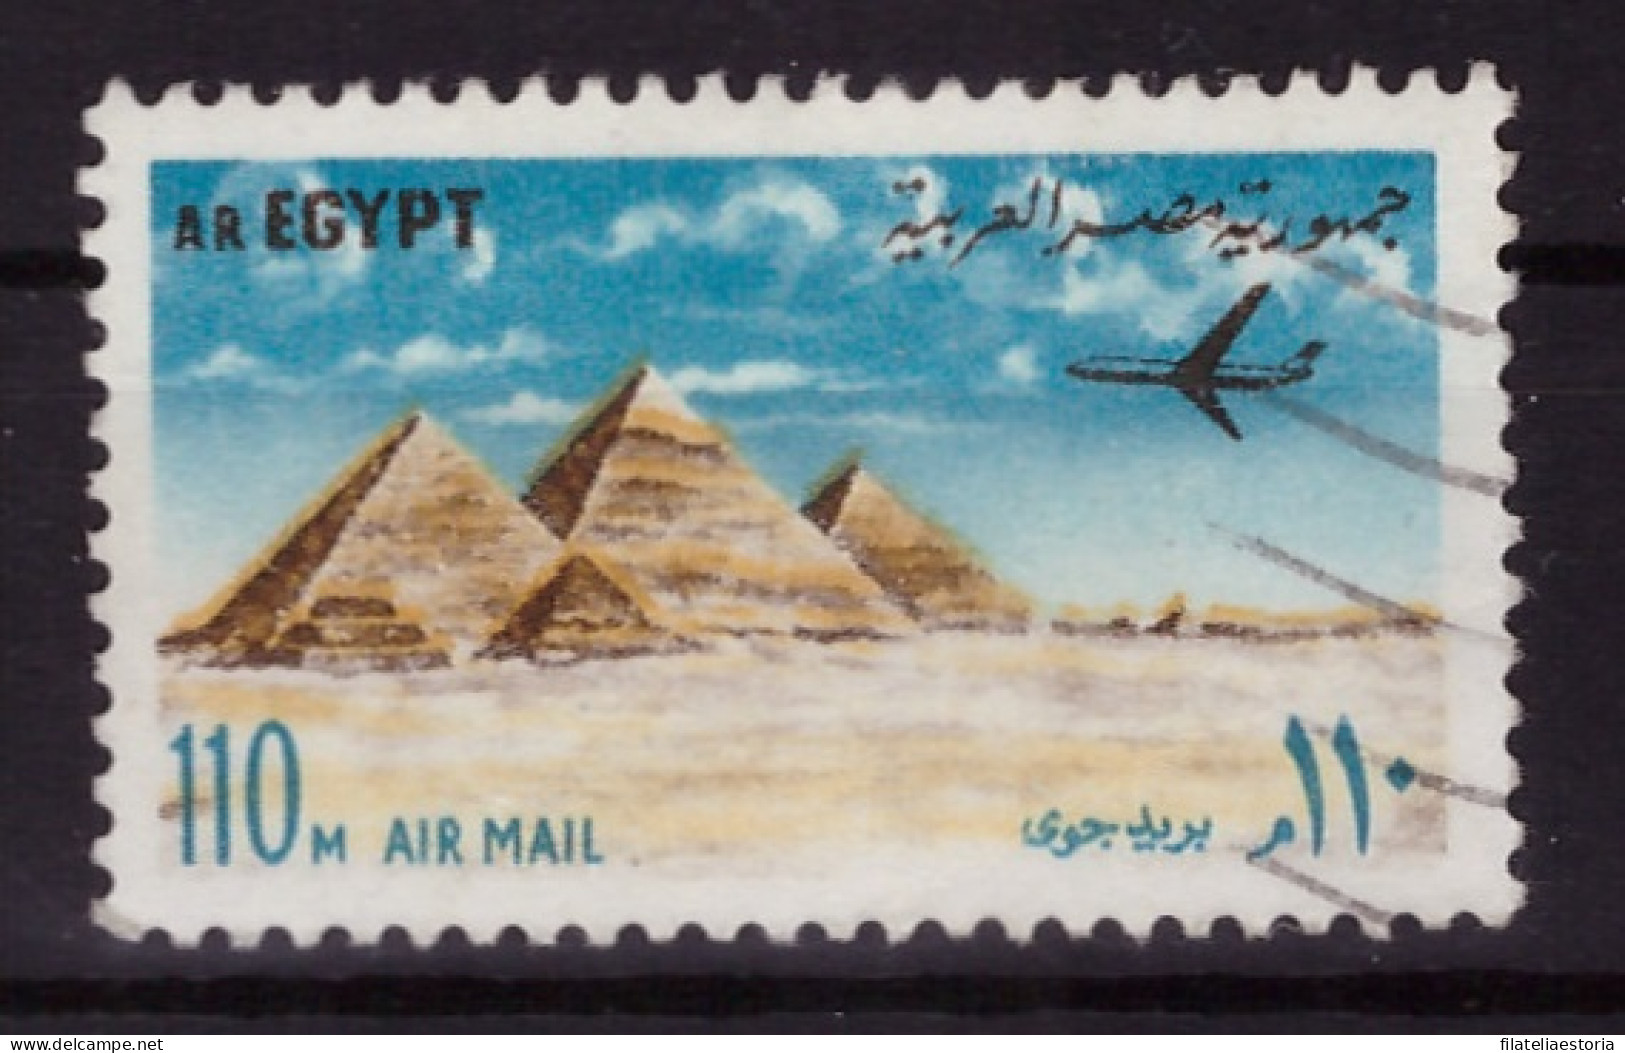 Egypte 1972 - Oblitéré - Monuments - Avions - Michel Nr. 1115 (egy350) - Oblitérés